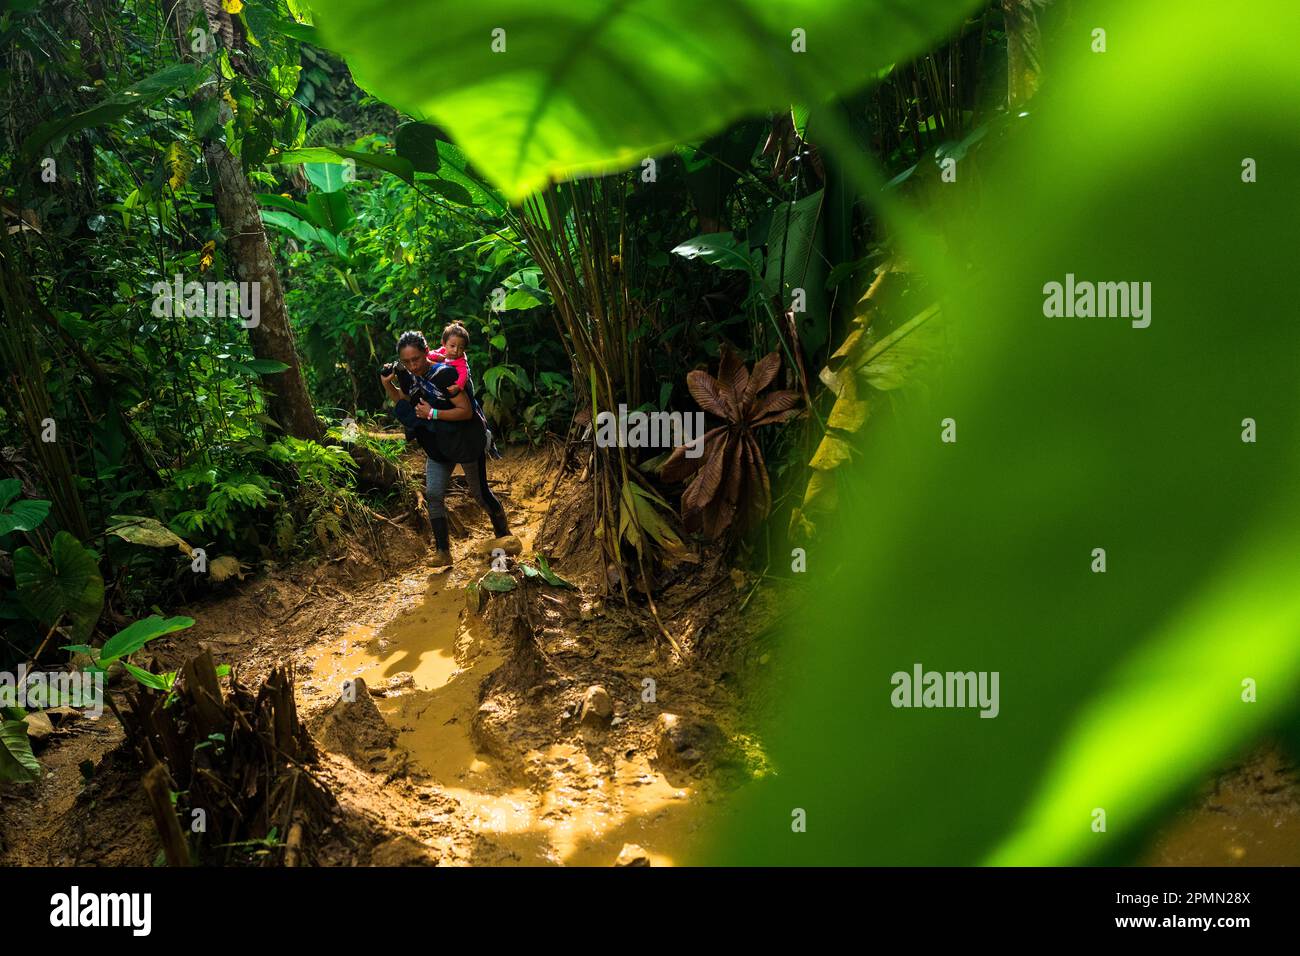 Un migrant équatorien, portant son bébé, marche à travers un sentier boueux dans la jungle sauvage et dangereuse de l'écart Darién entre la Colombie et Panamá. Banque D'Images